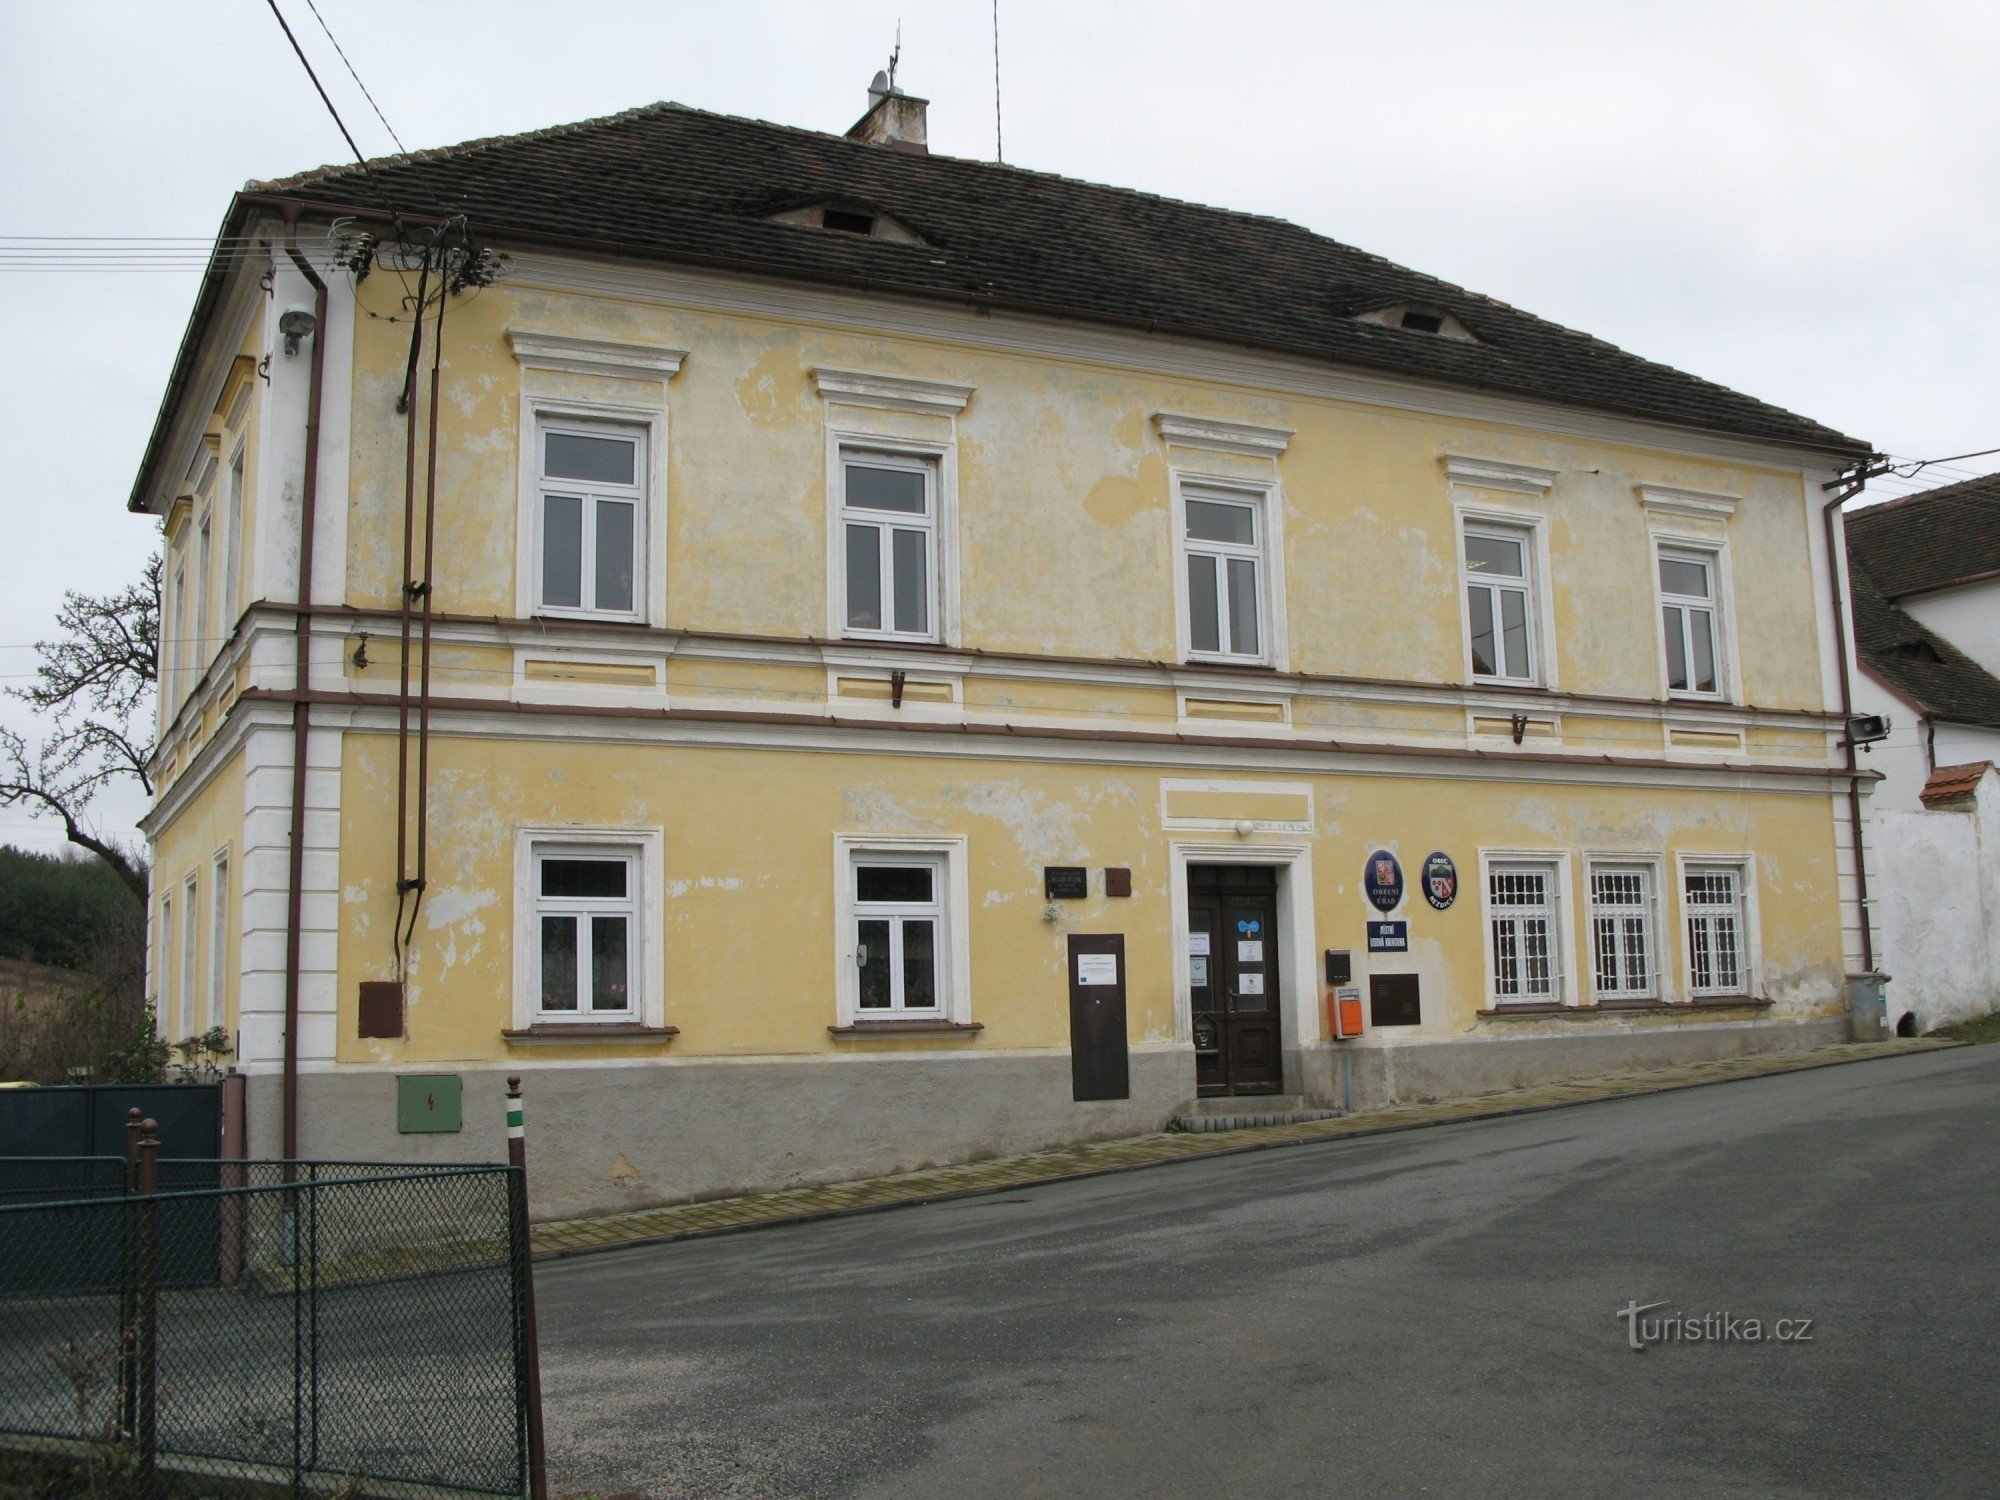 Nezdice - escritório municipal, antiga escola municipal de 1847